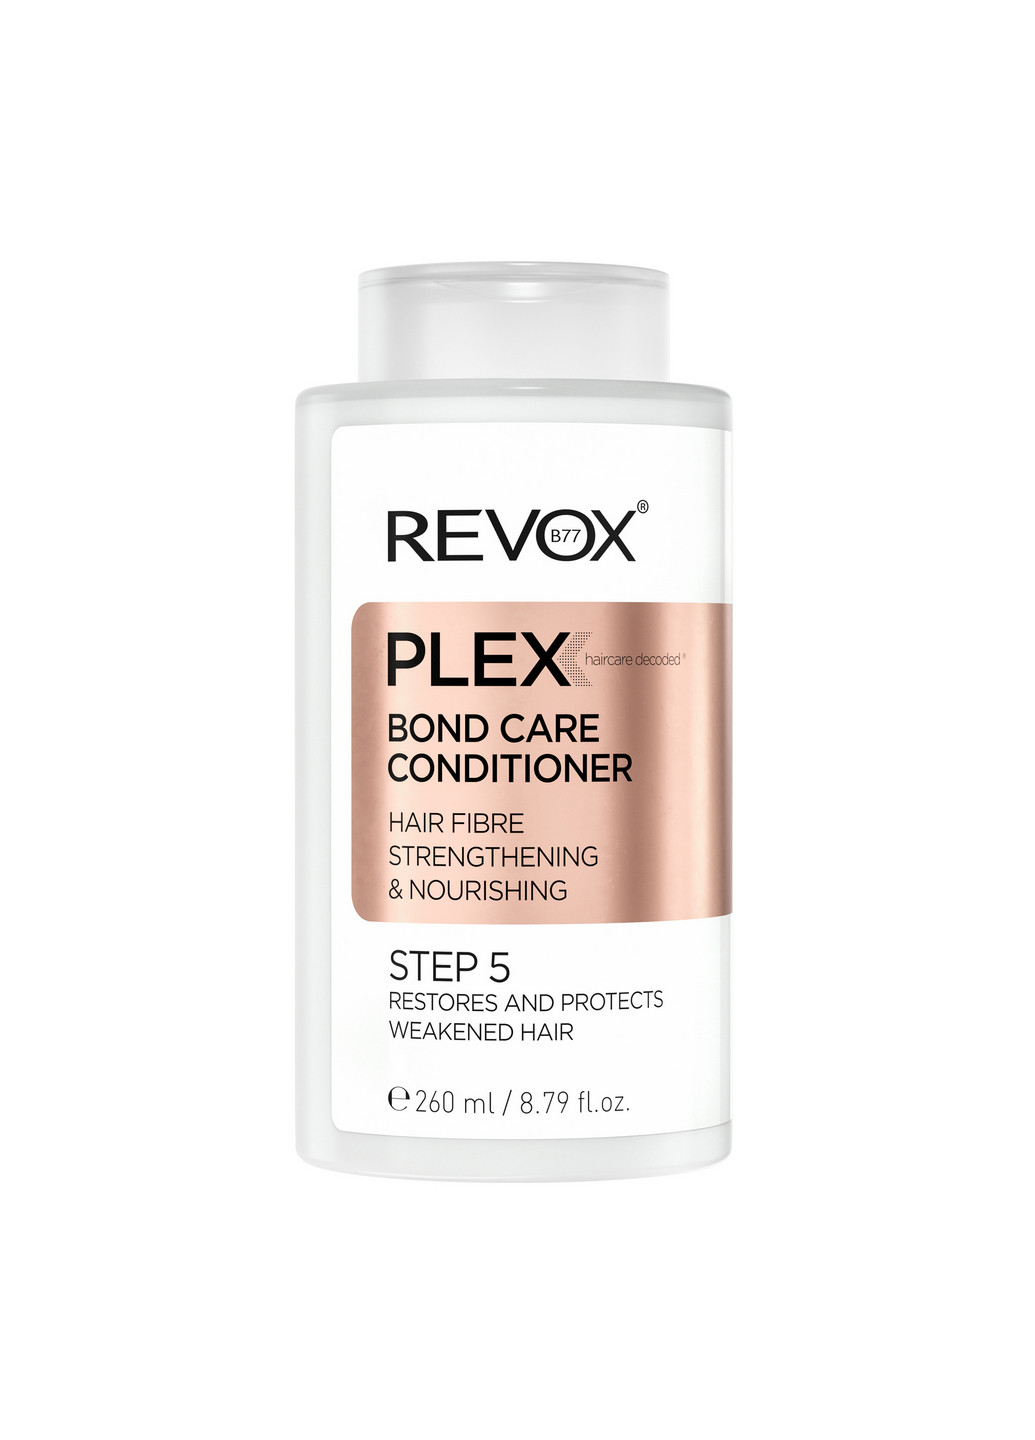 Кондиционер для питания и укрепления волос, шаг 5 B77 Plex Bond Care Conditioner STEP 5, 260 мл Revox (264920955)